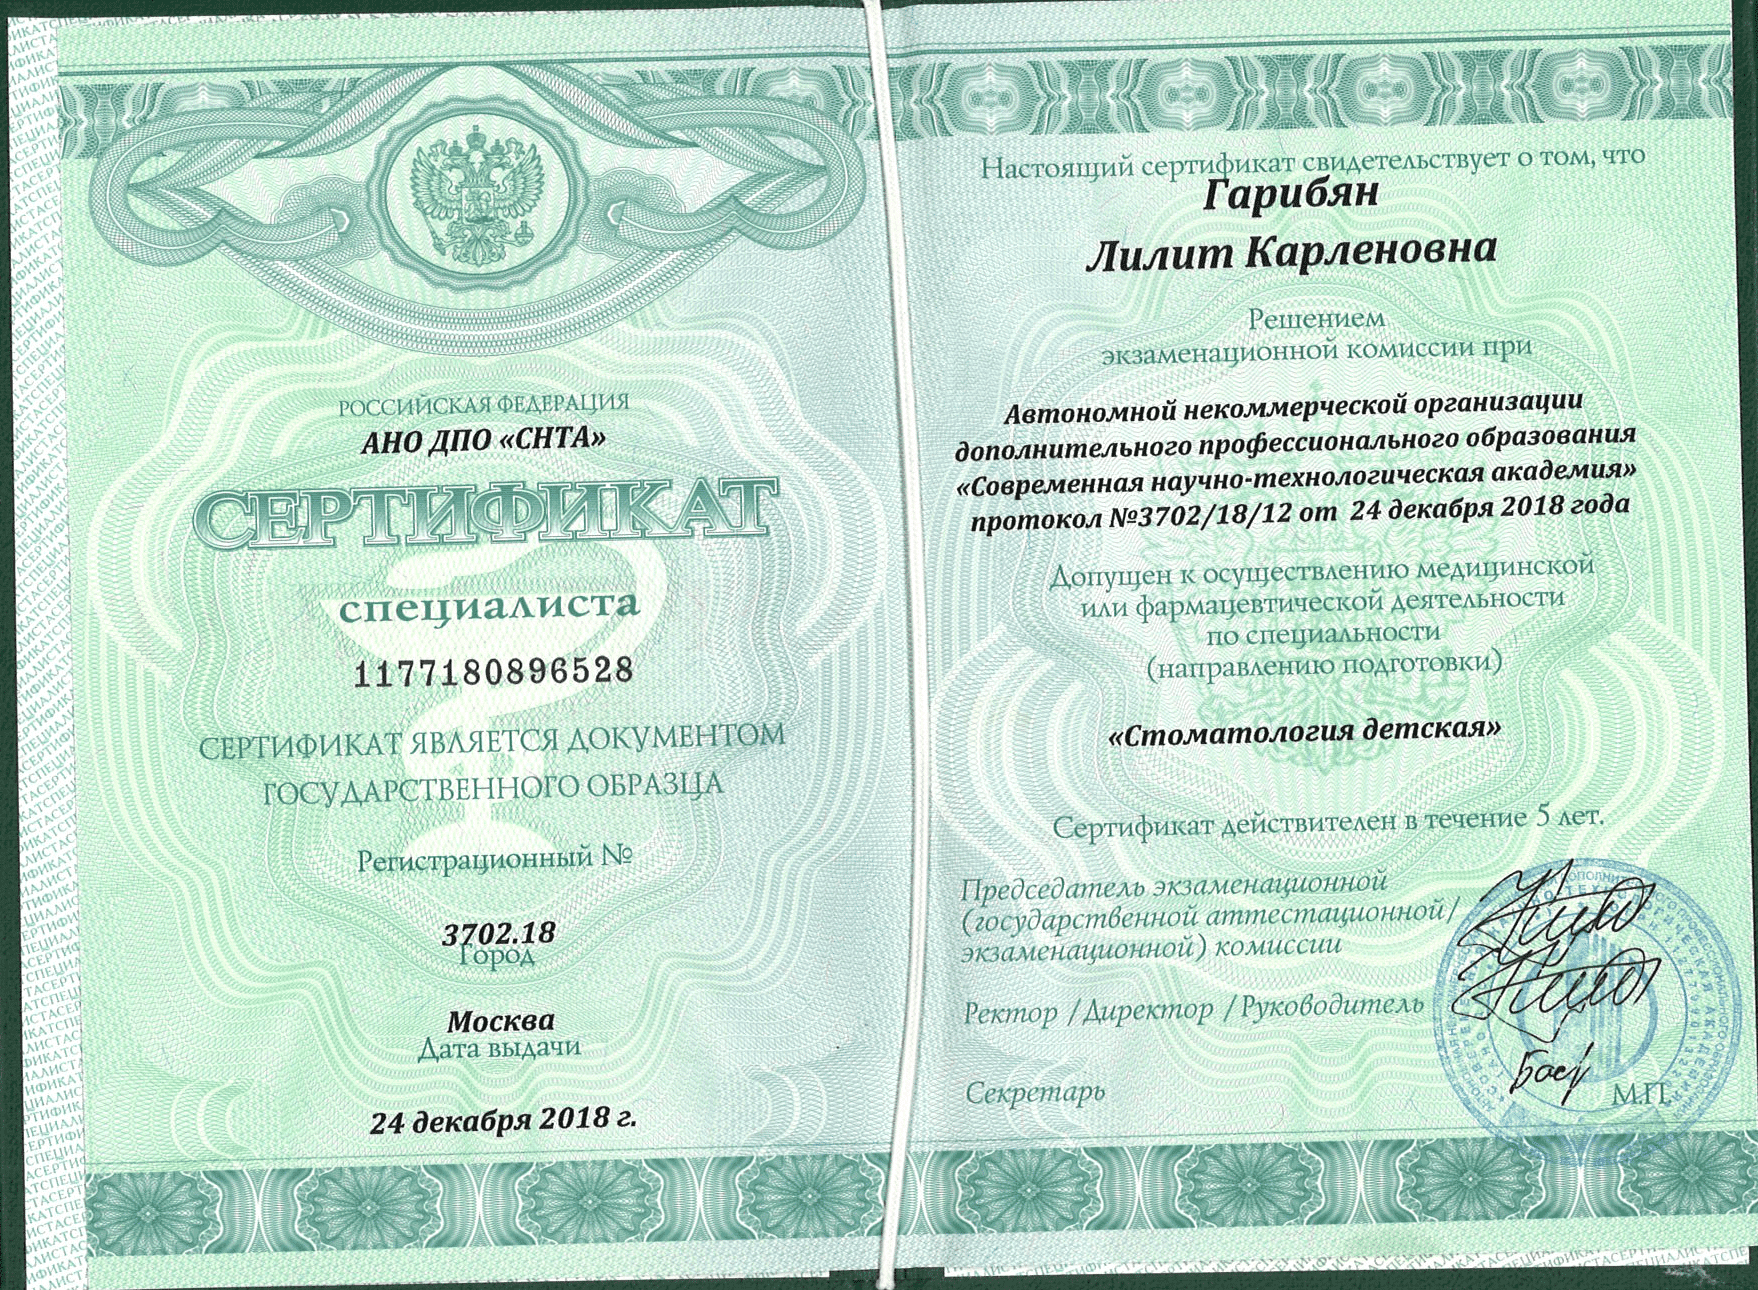 Гарибян Лилит Карленовна сертификат специалиста 5